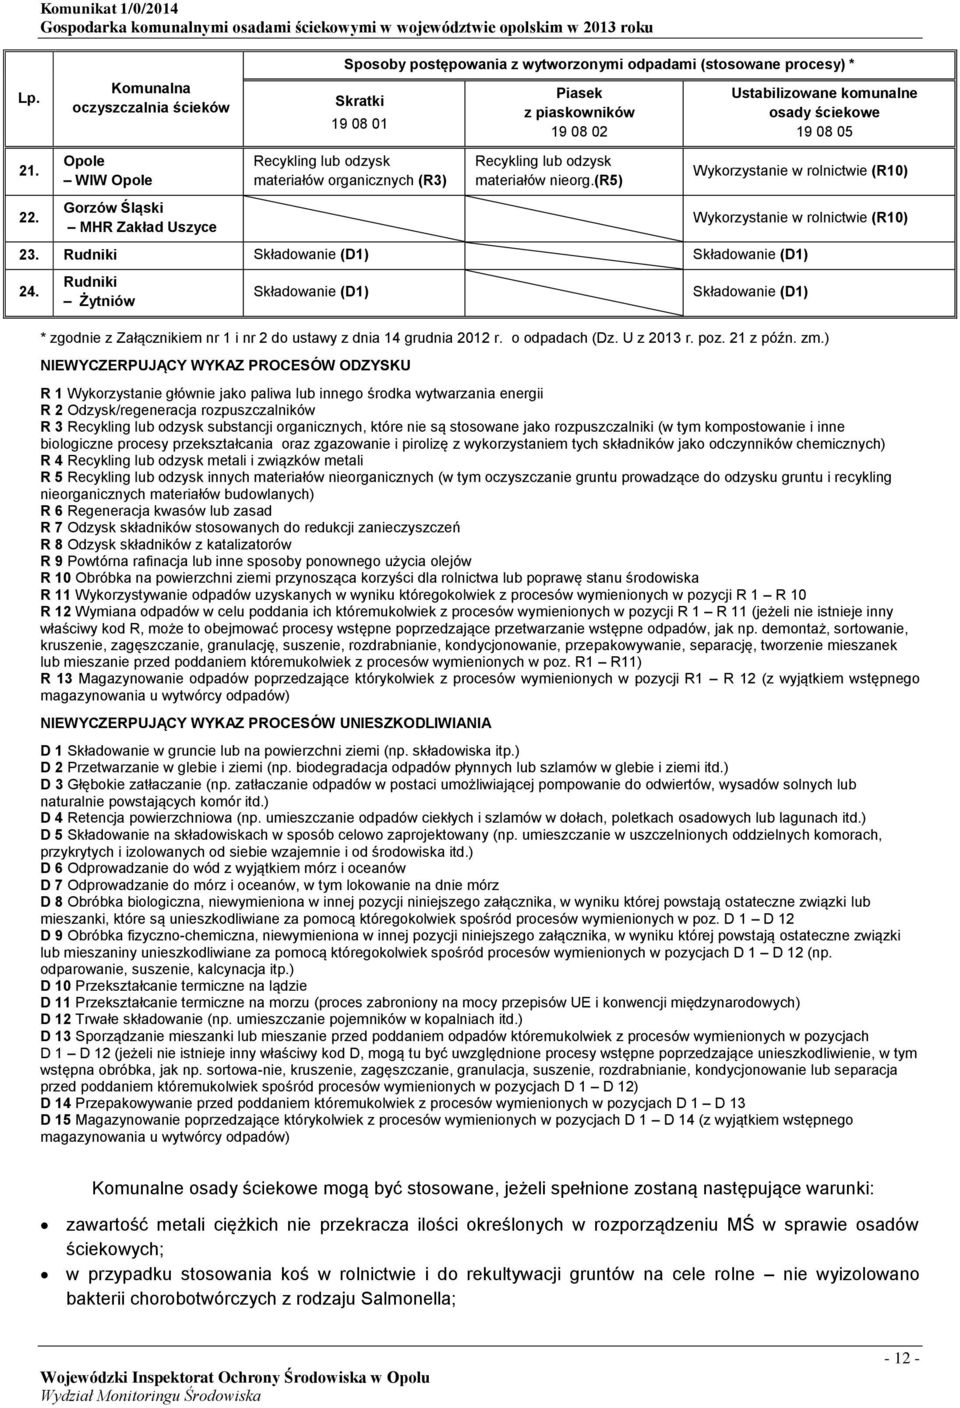 Rudniki Żytniów * zgodnie z Załącznikiem nr 1 i nr 2 do ustawy z dnia 14 grudnia 2012 r. o odpadach (Dz. U z 2013 r. poz. 21 z późn. zm.